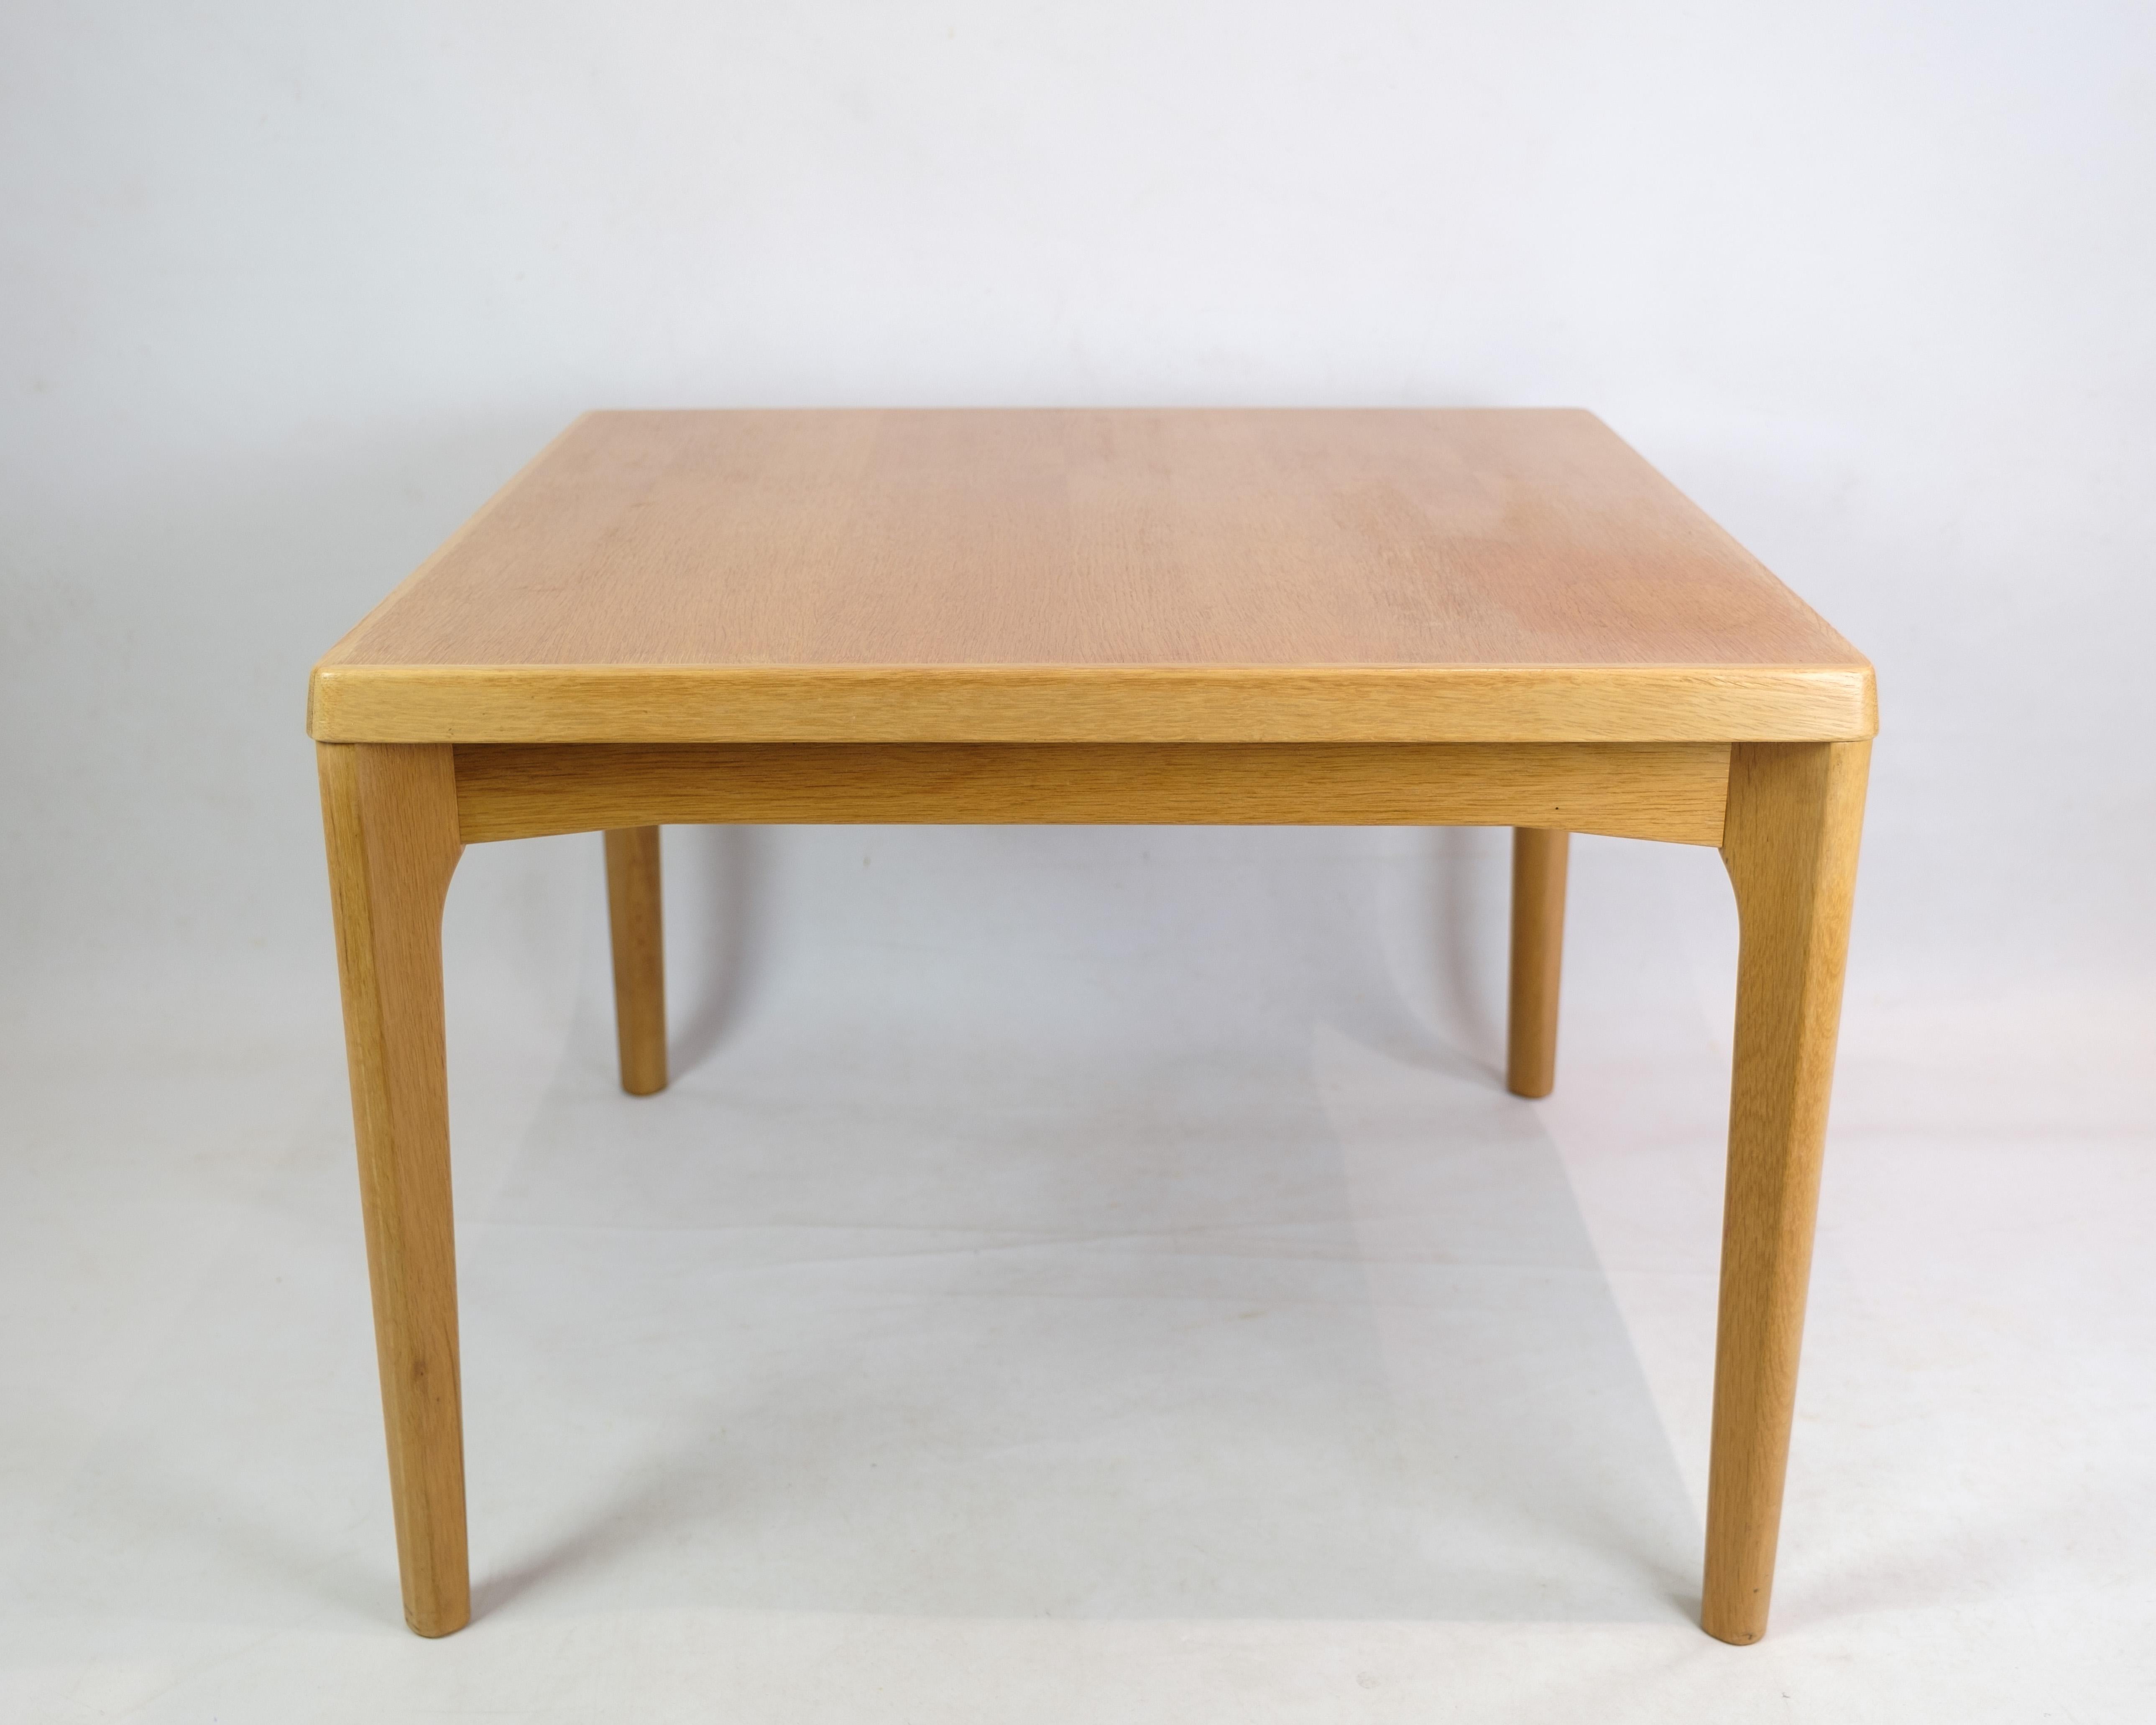 Table basse en chêne, conçue par Henning Kjærnulf et fabriquée par l'usine de chaises et de meubles Vejle vers les années 1960. Une table basse carrée en bon état et de bonne qualité.